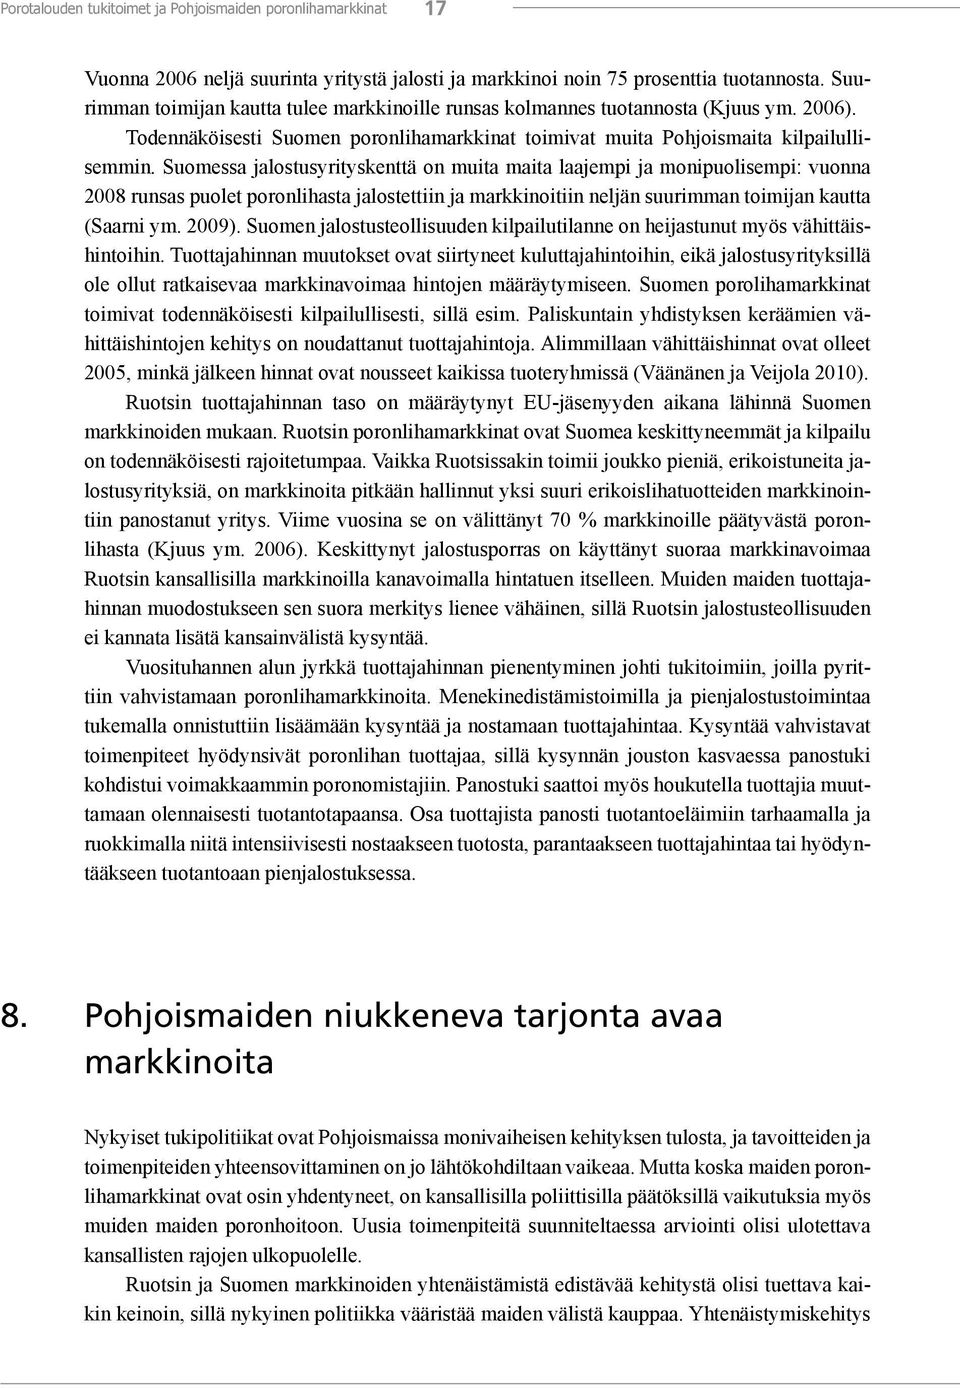 Suomessa jalostusyrityskenttä on muita maita laajempi ja monipuolisempi: vuonna 2008 runsas puolet poronlihasta jalostettiin ja markkinoitiin neljän suurimman toimijan kautta (Saarni ym. 2009).